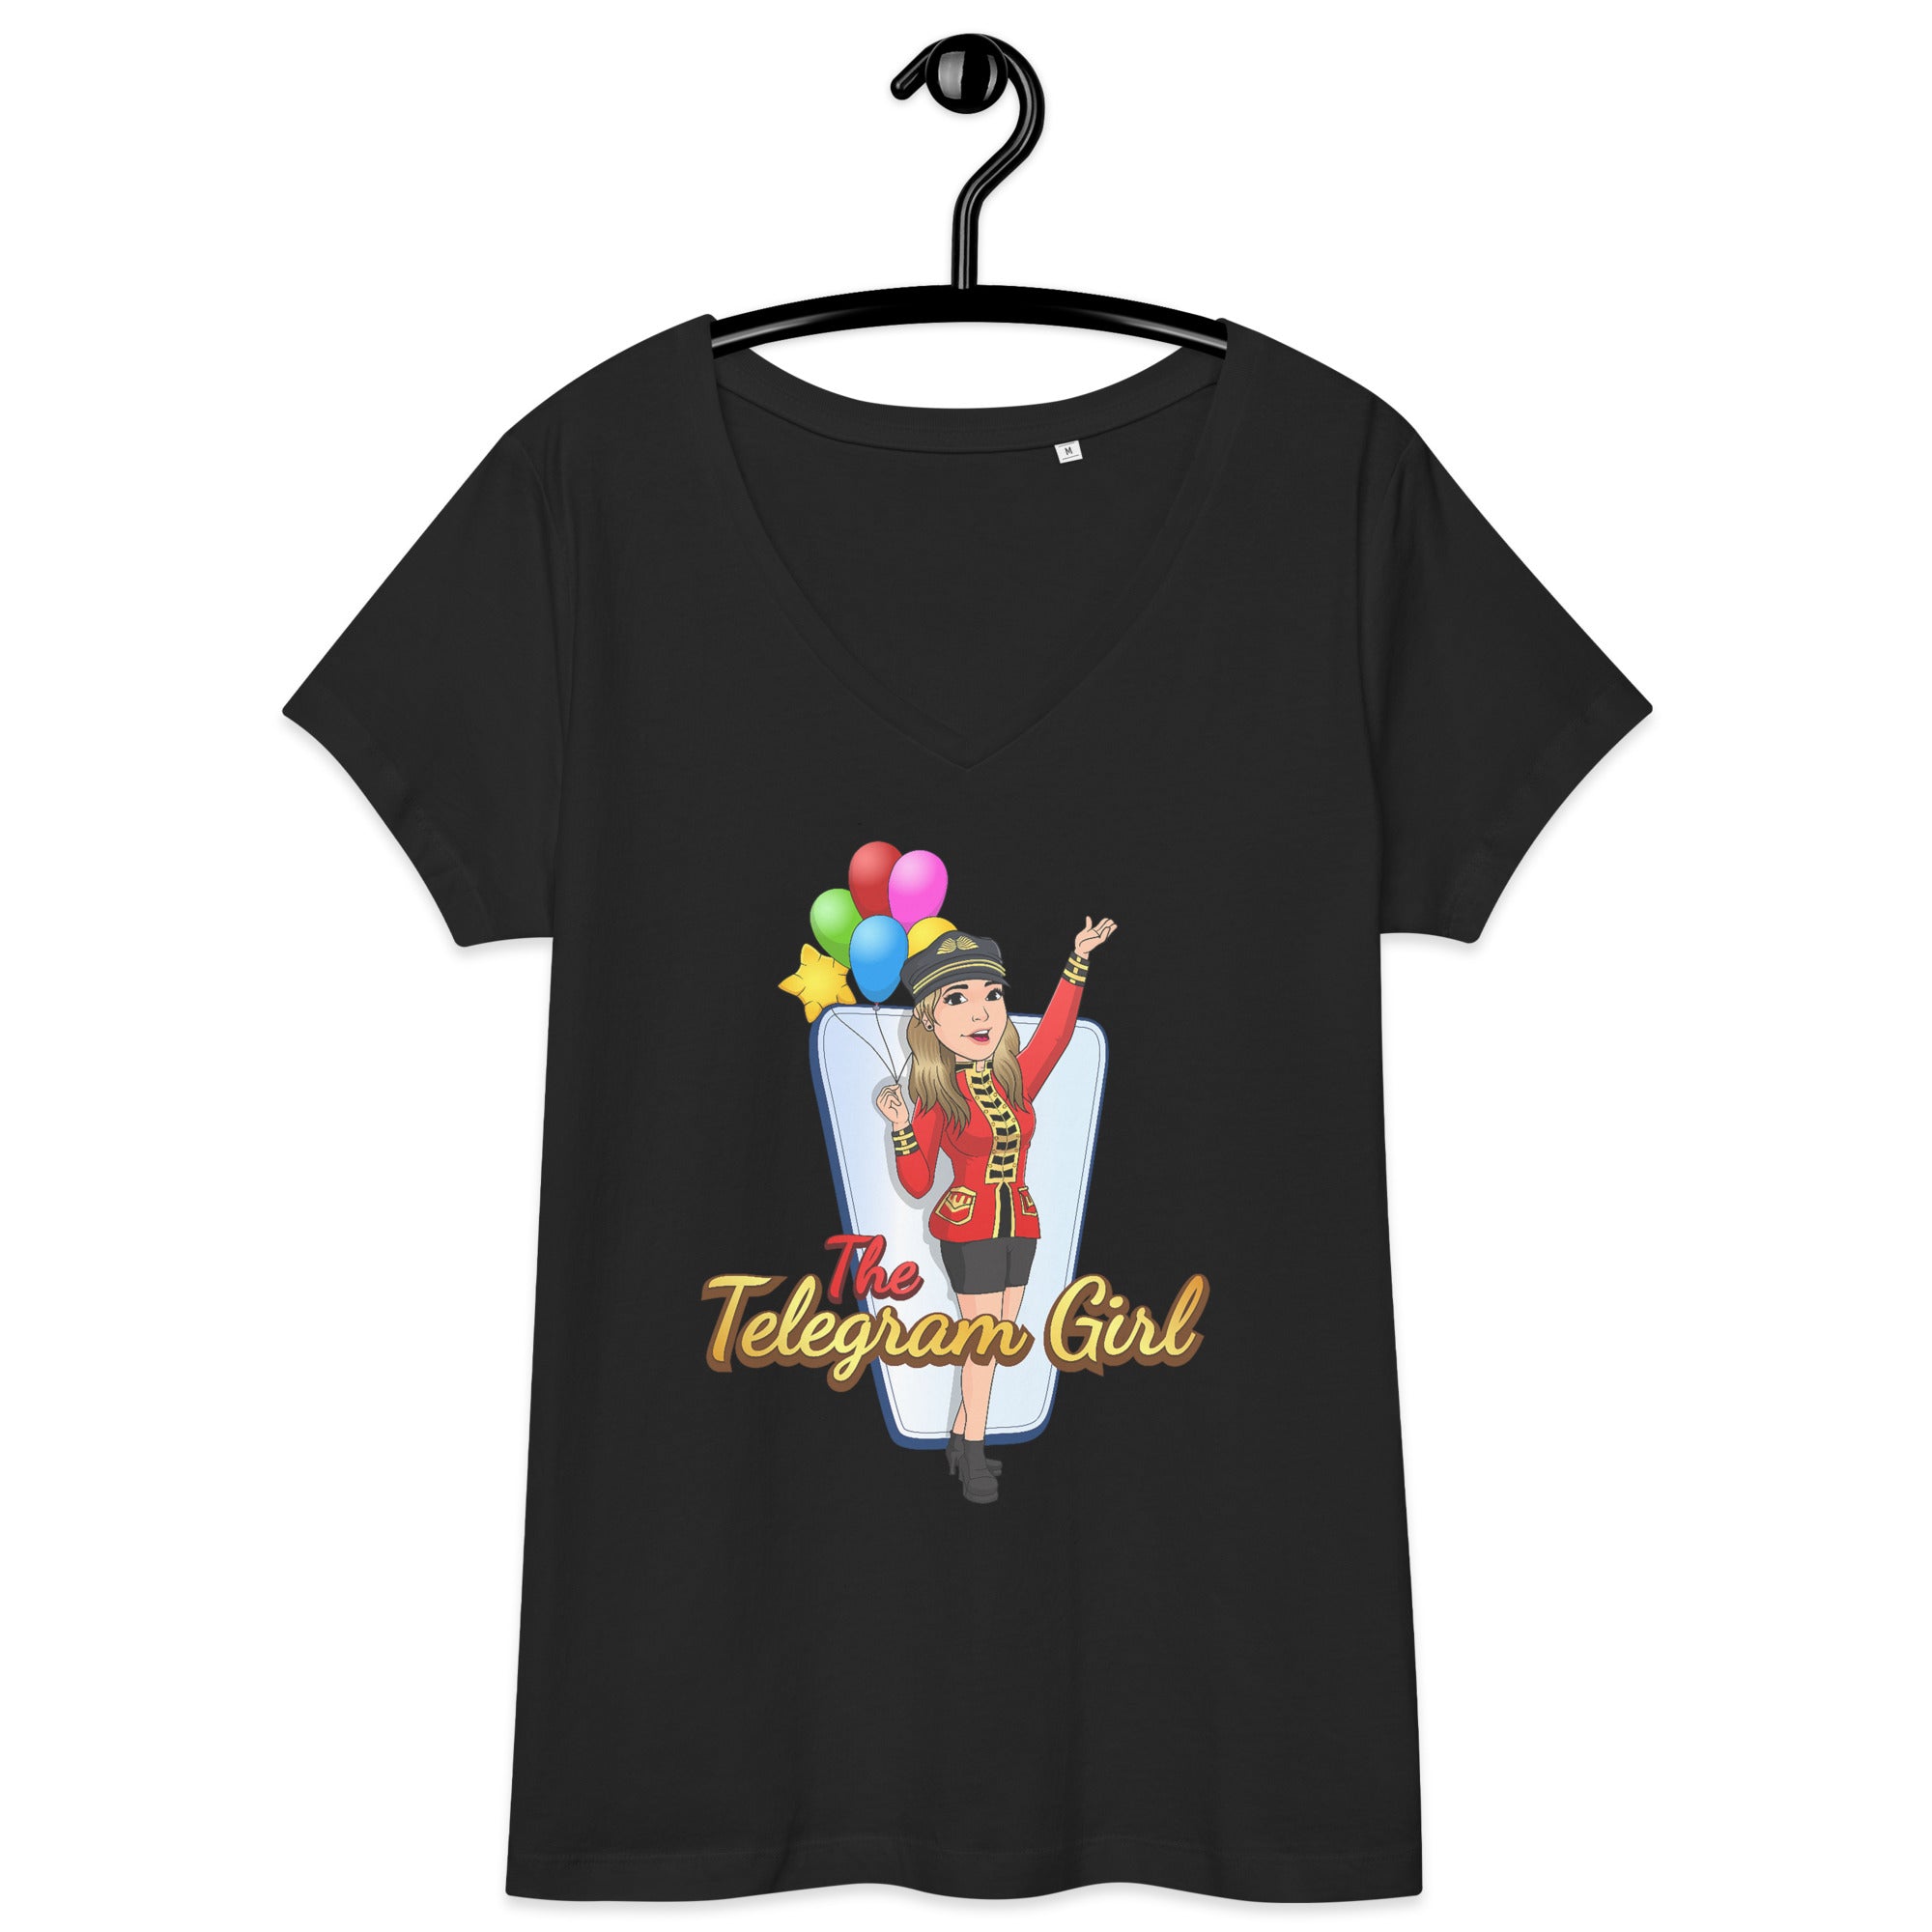 The Telegram Girl Women’s fitted v-neck t-shirt